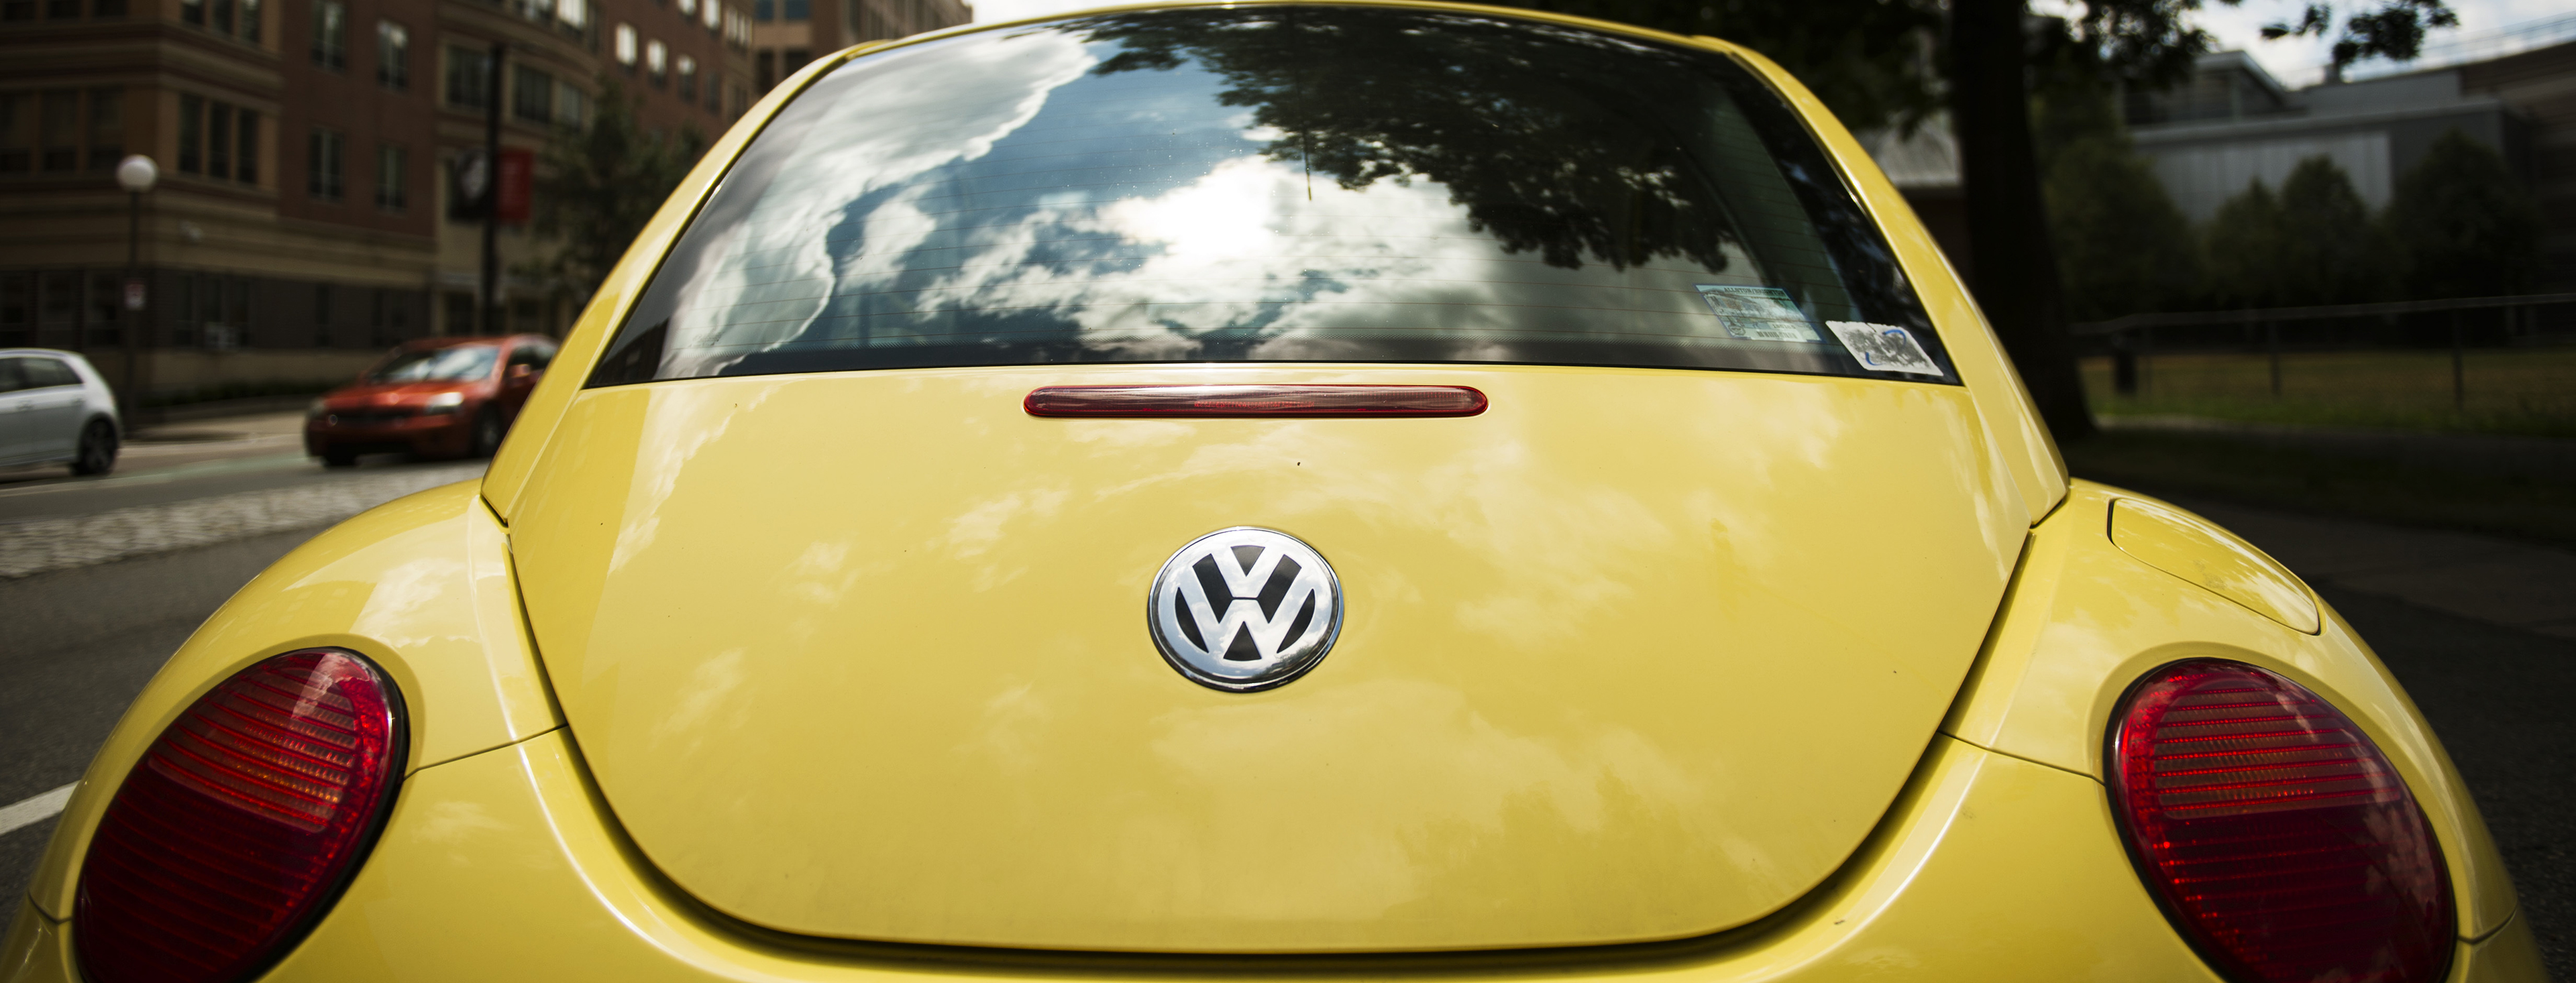 Volkswagen HD wallpapers, Desktop wallpaper - most viewed